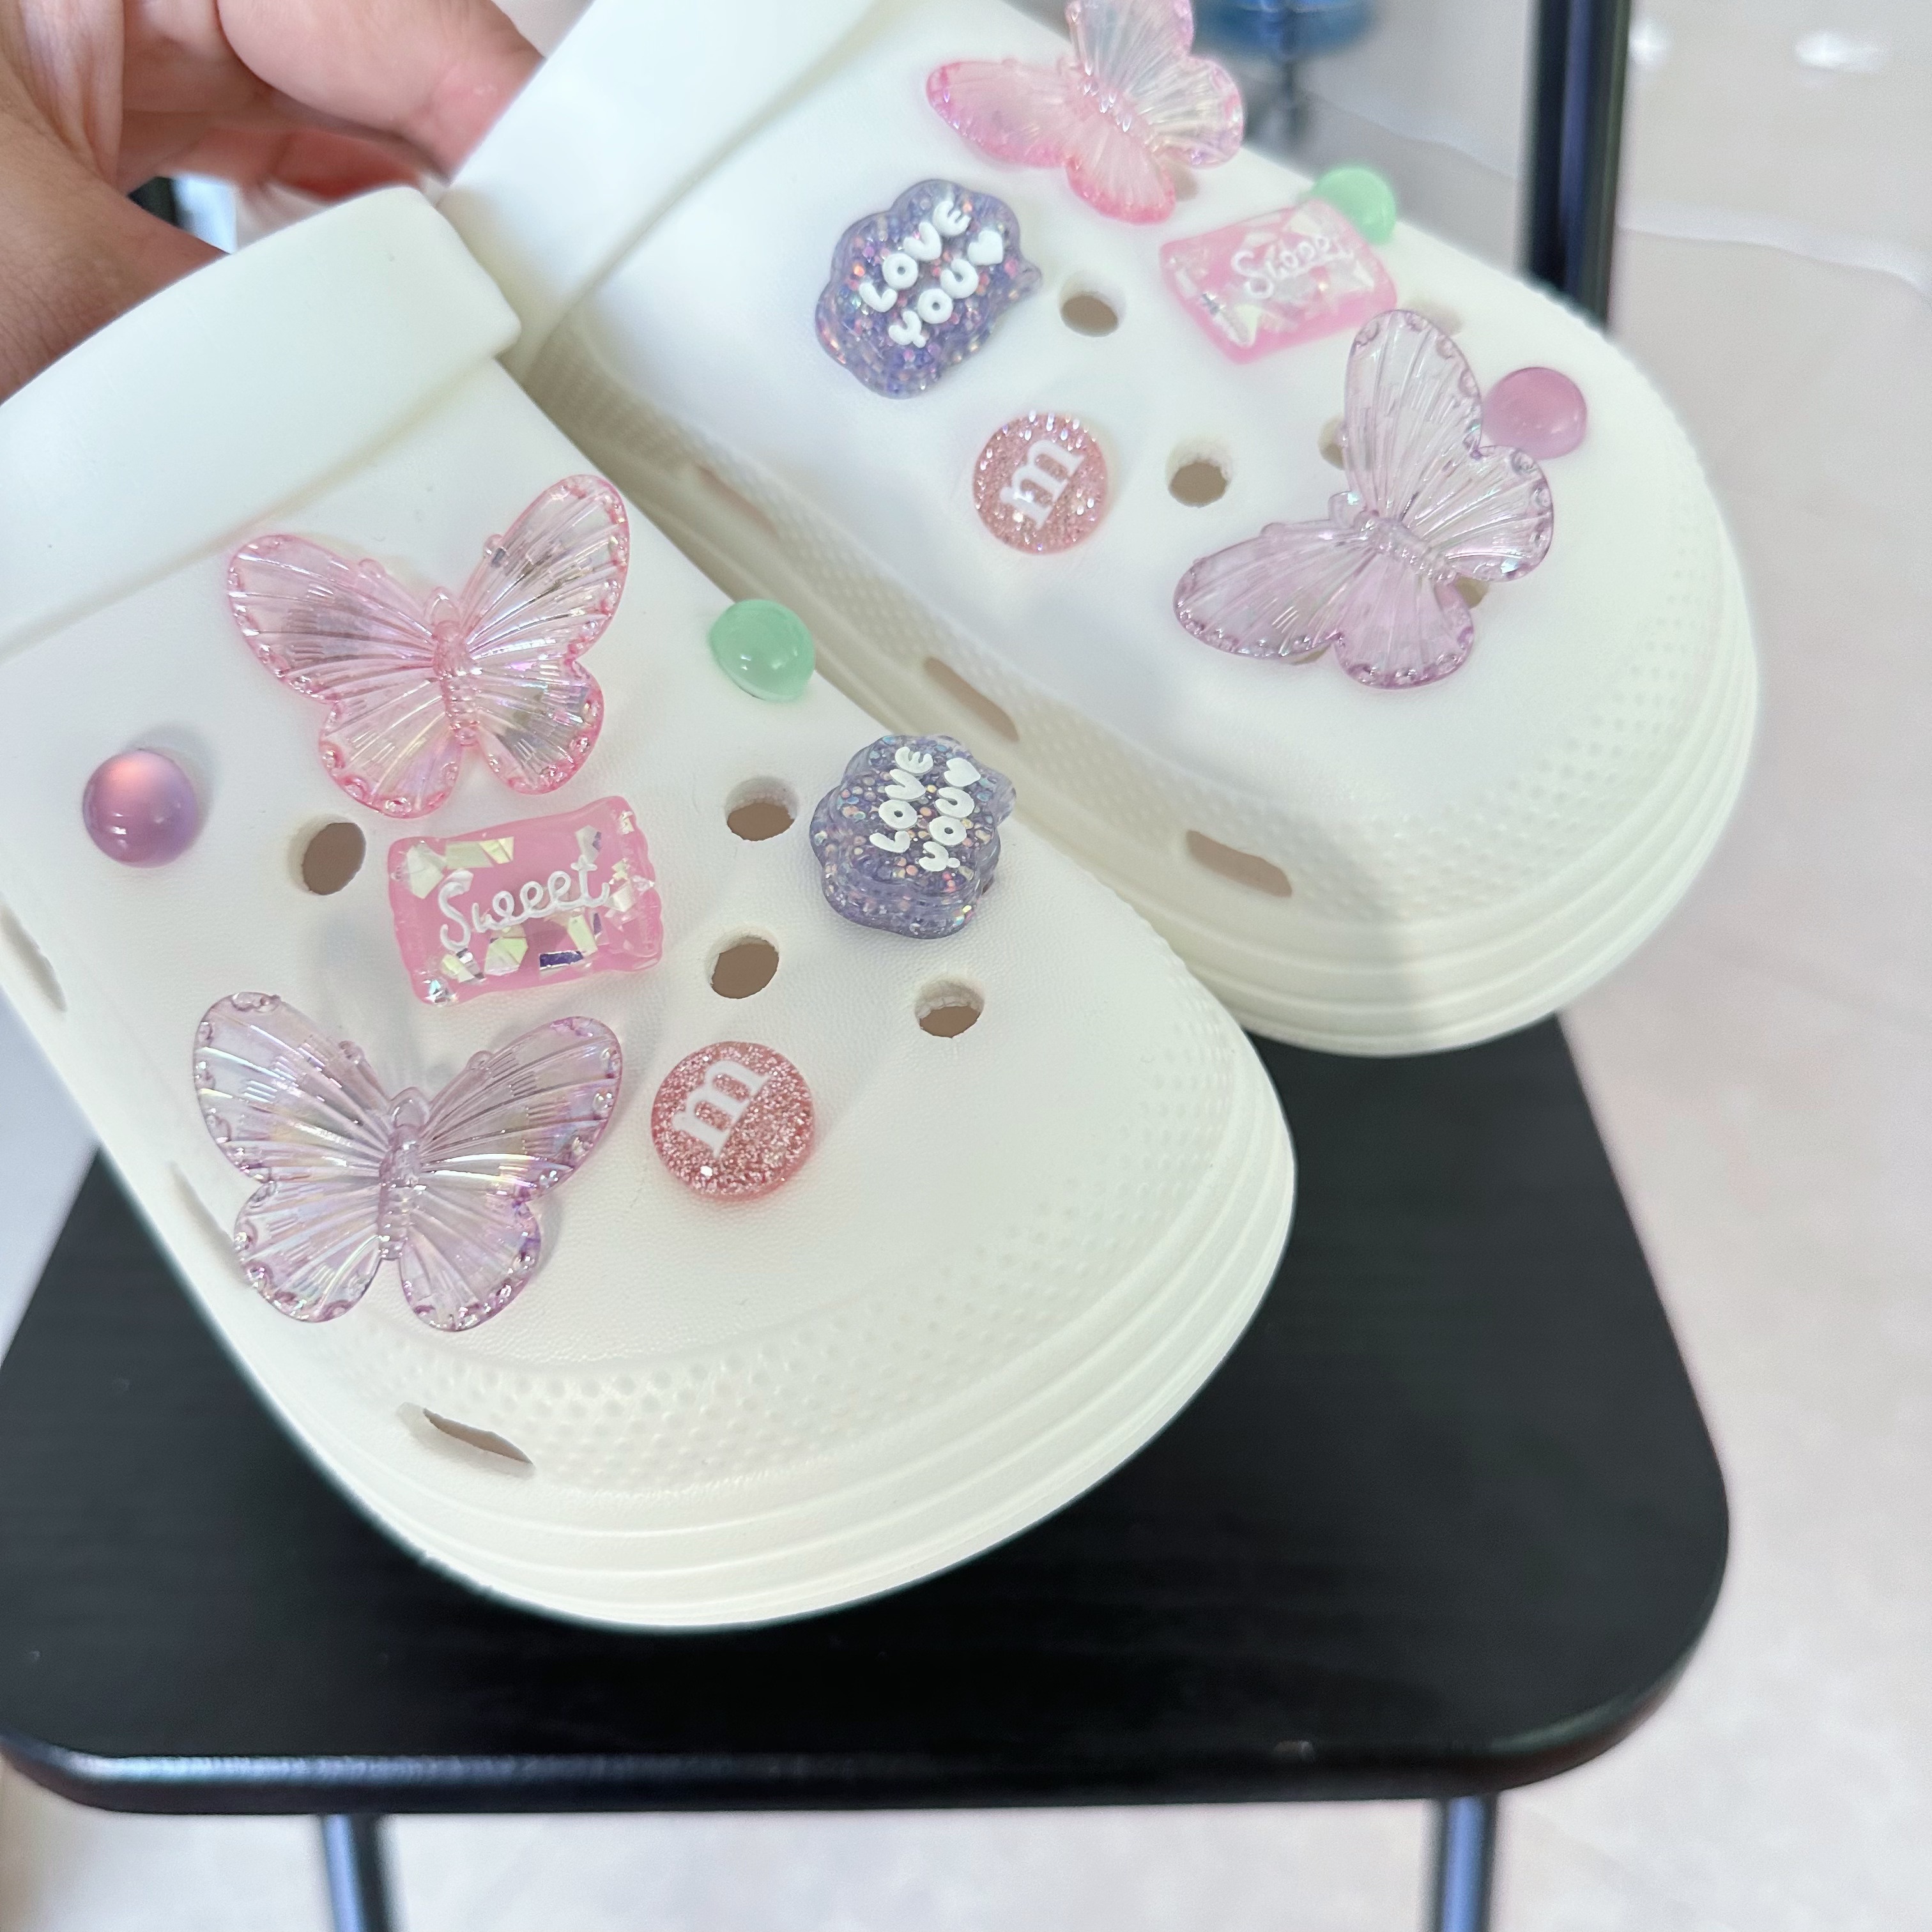 Pink Butterfly Bling Crocs Footwear - CrocsBox